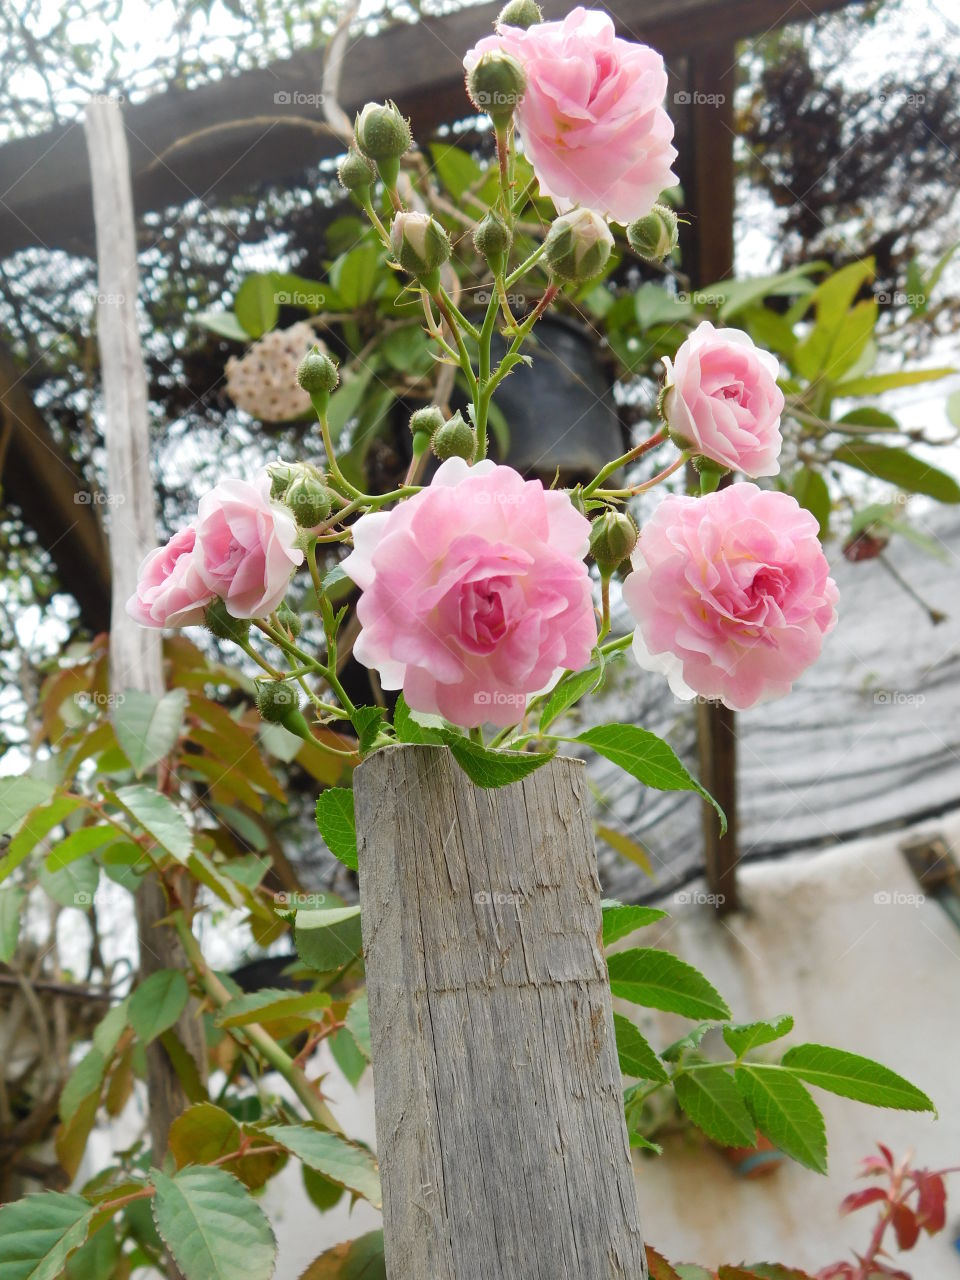 Roses in garden of my mother